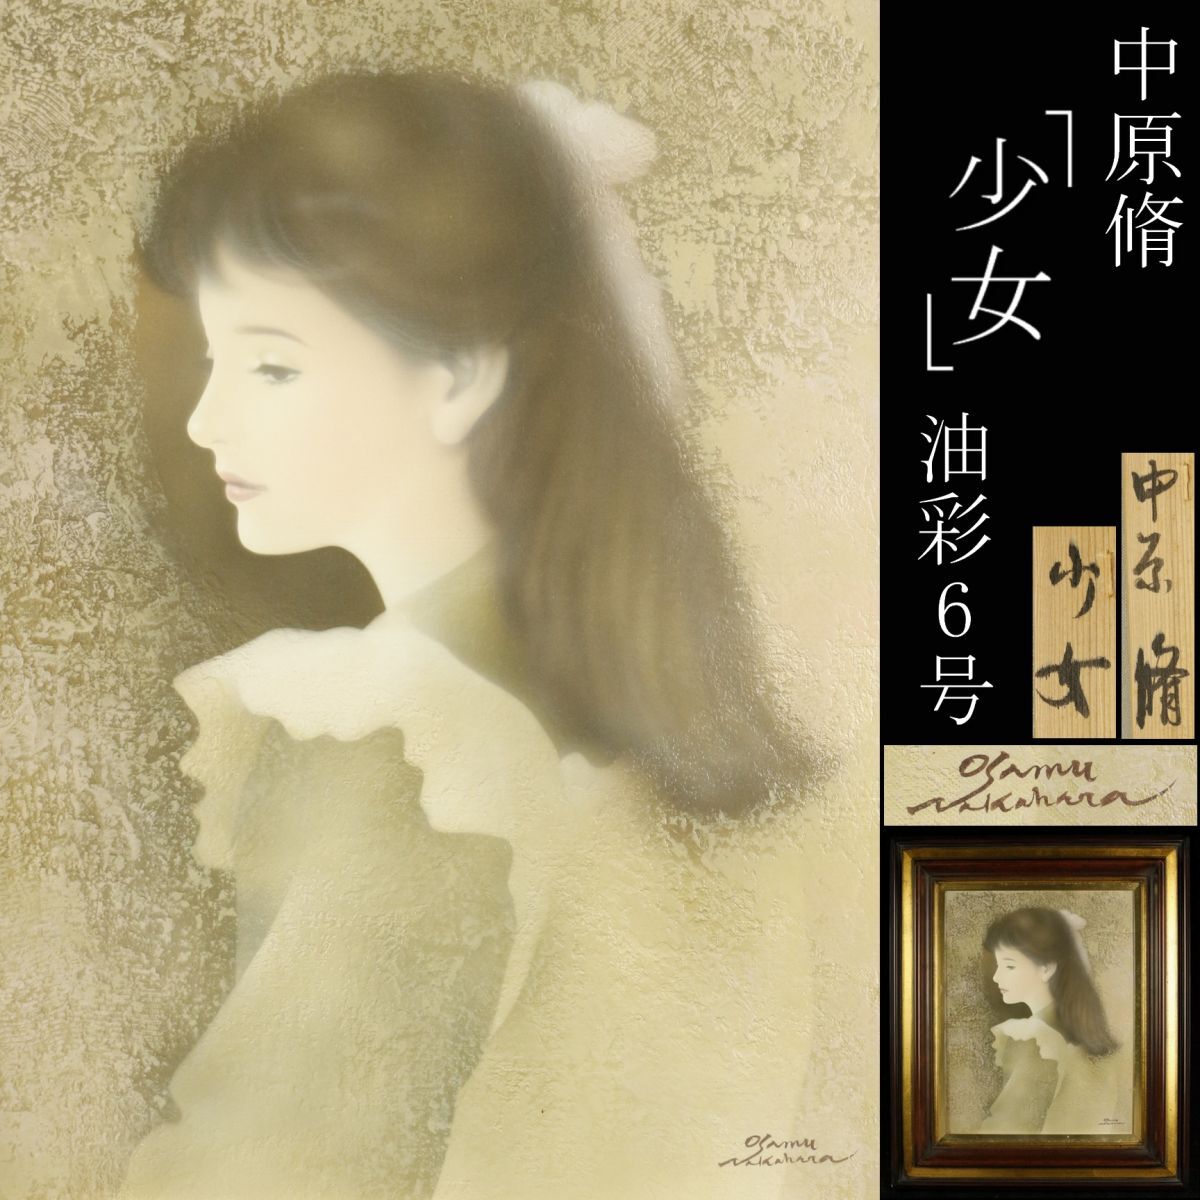 [LIG] Authenticité garantie Osamu Nakahara Girl Peinture à l'huile 6cm Peinture de figurines Collection collector [.EE]24.3, peinture, peinture à l'huile, portrait